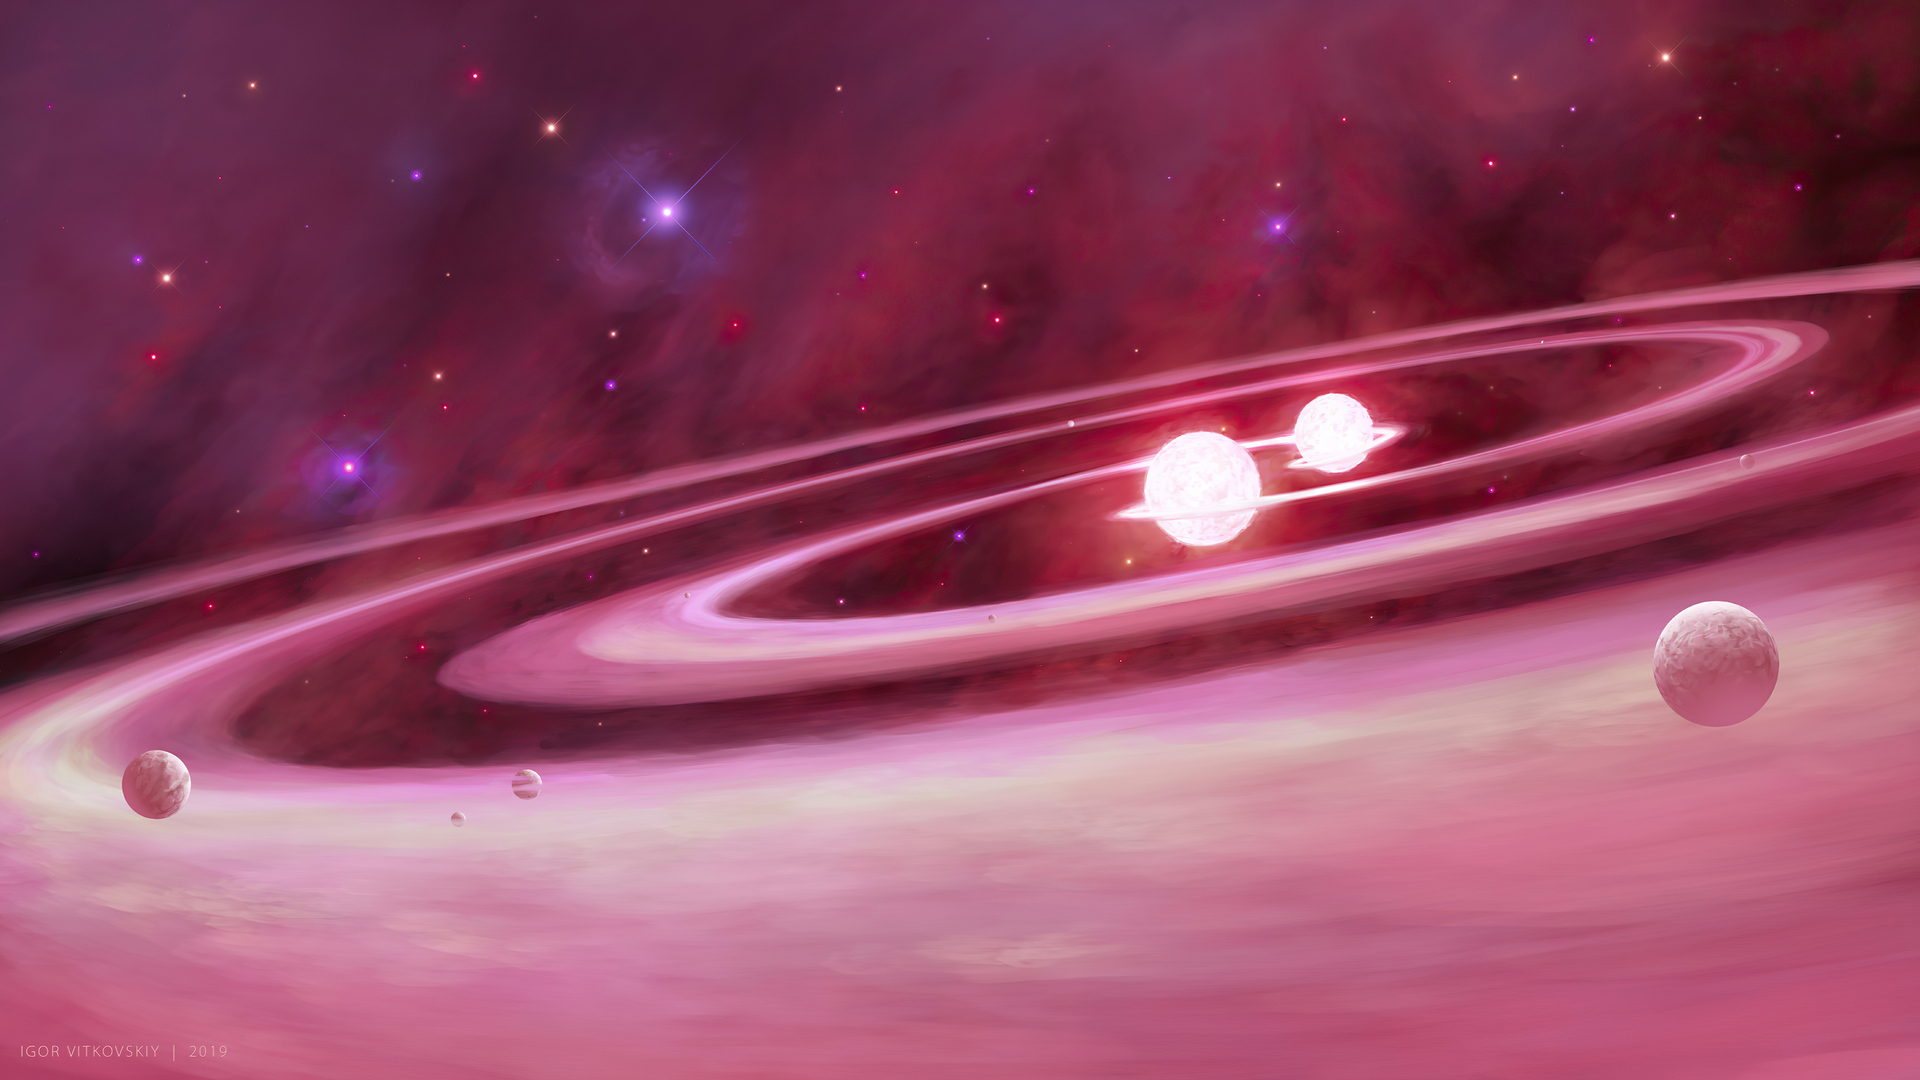 Khám phá không gian bao la và lãng mạn của dải Ngân Hà màu hồng qua hình ảnh Pink Galaxy. Bạn sẽ được đắm mình trong những điều tuyệt vời nhất của vũ trụ cùng với bức ảnh này!